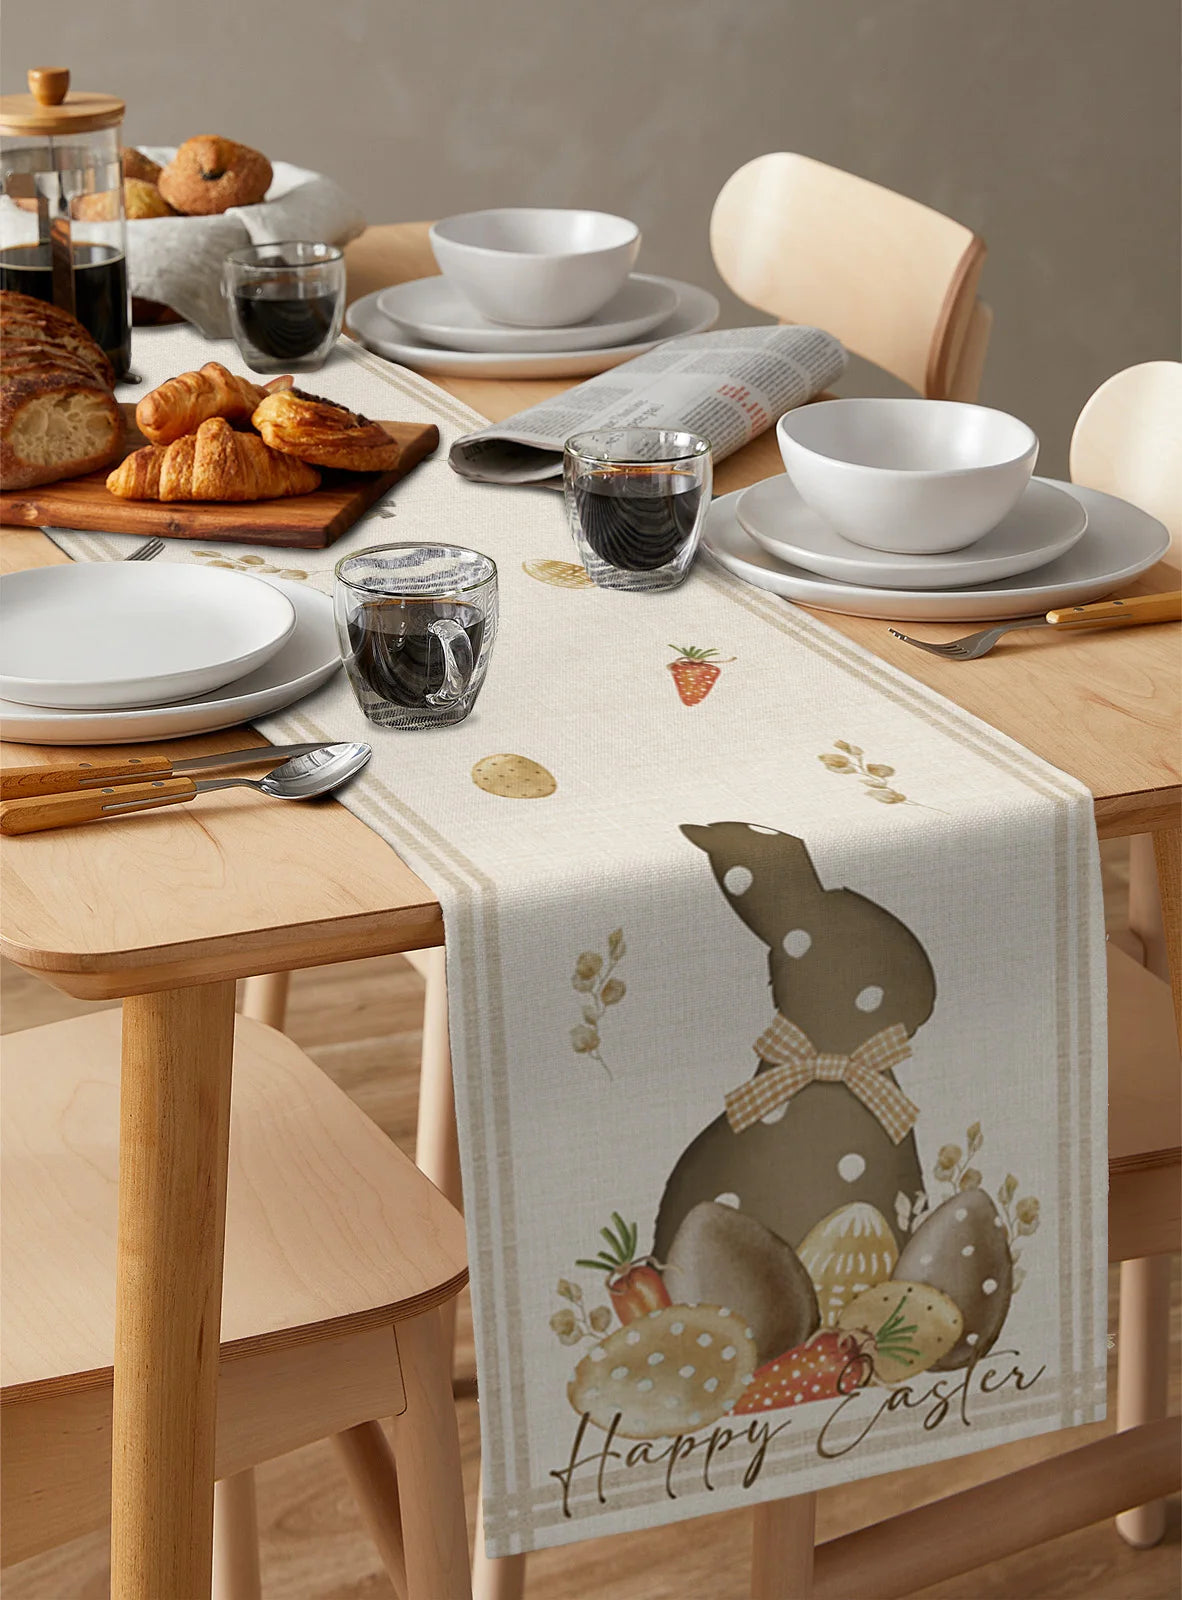 Easter Rabbit Decorative Table Runner